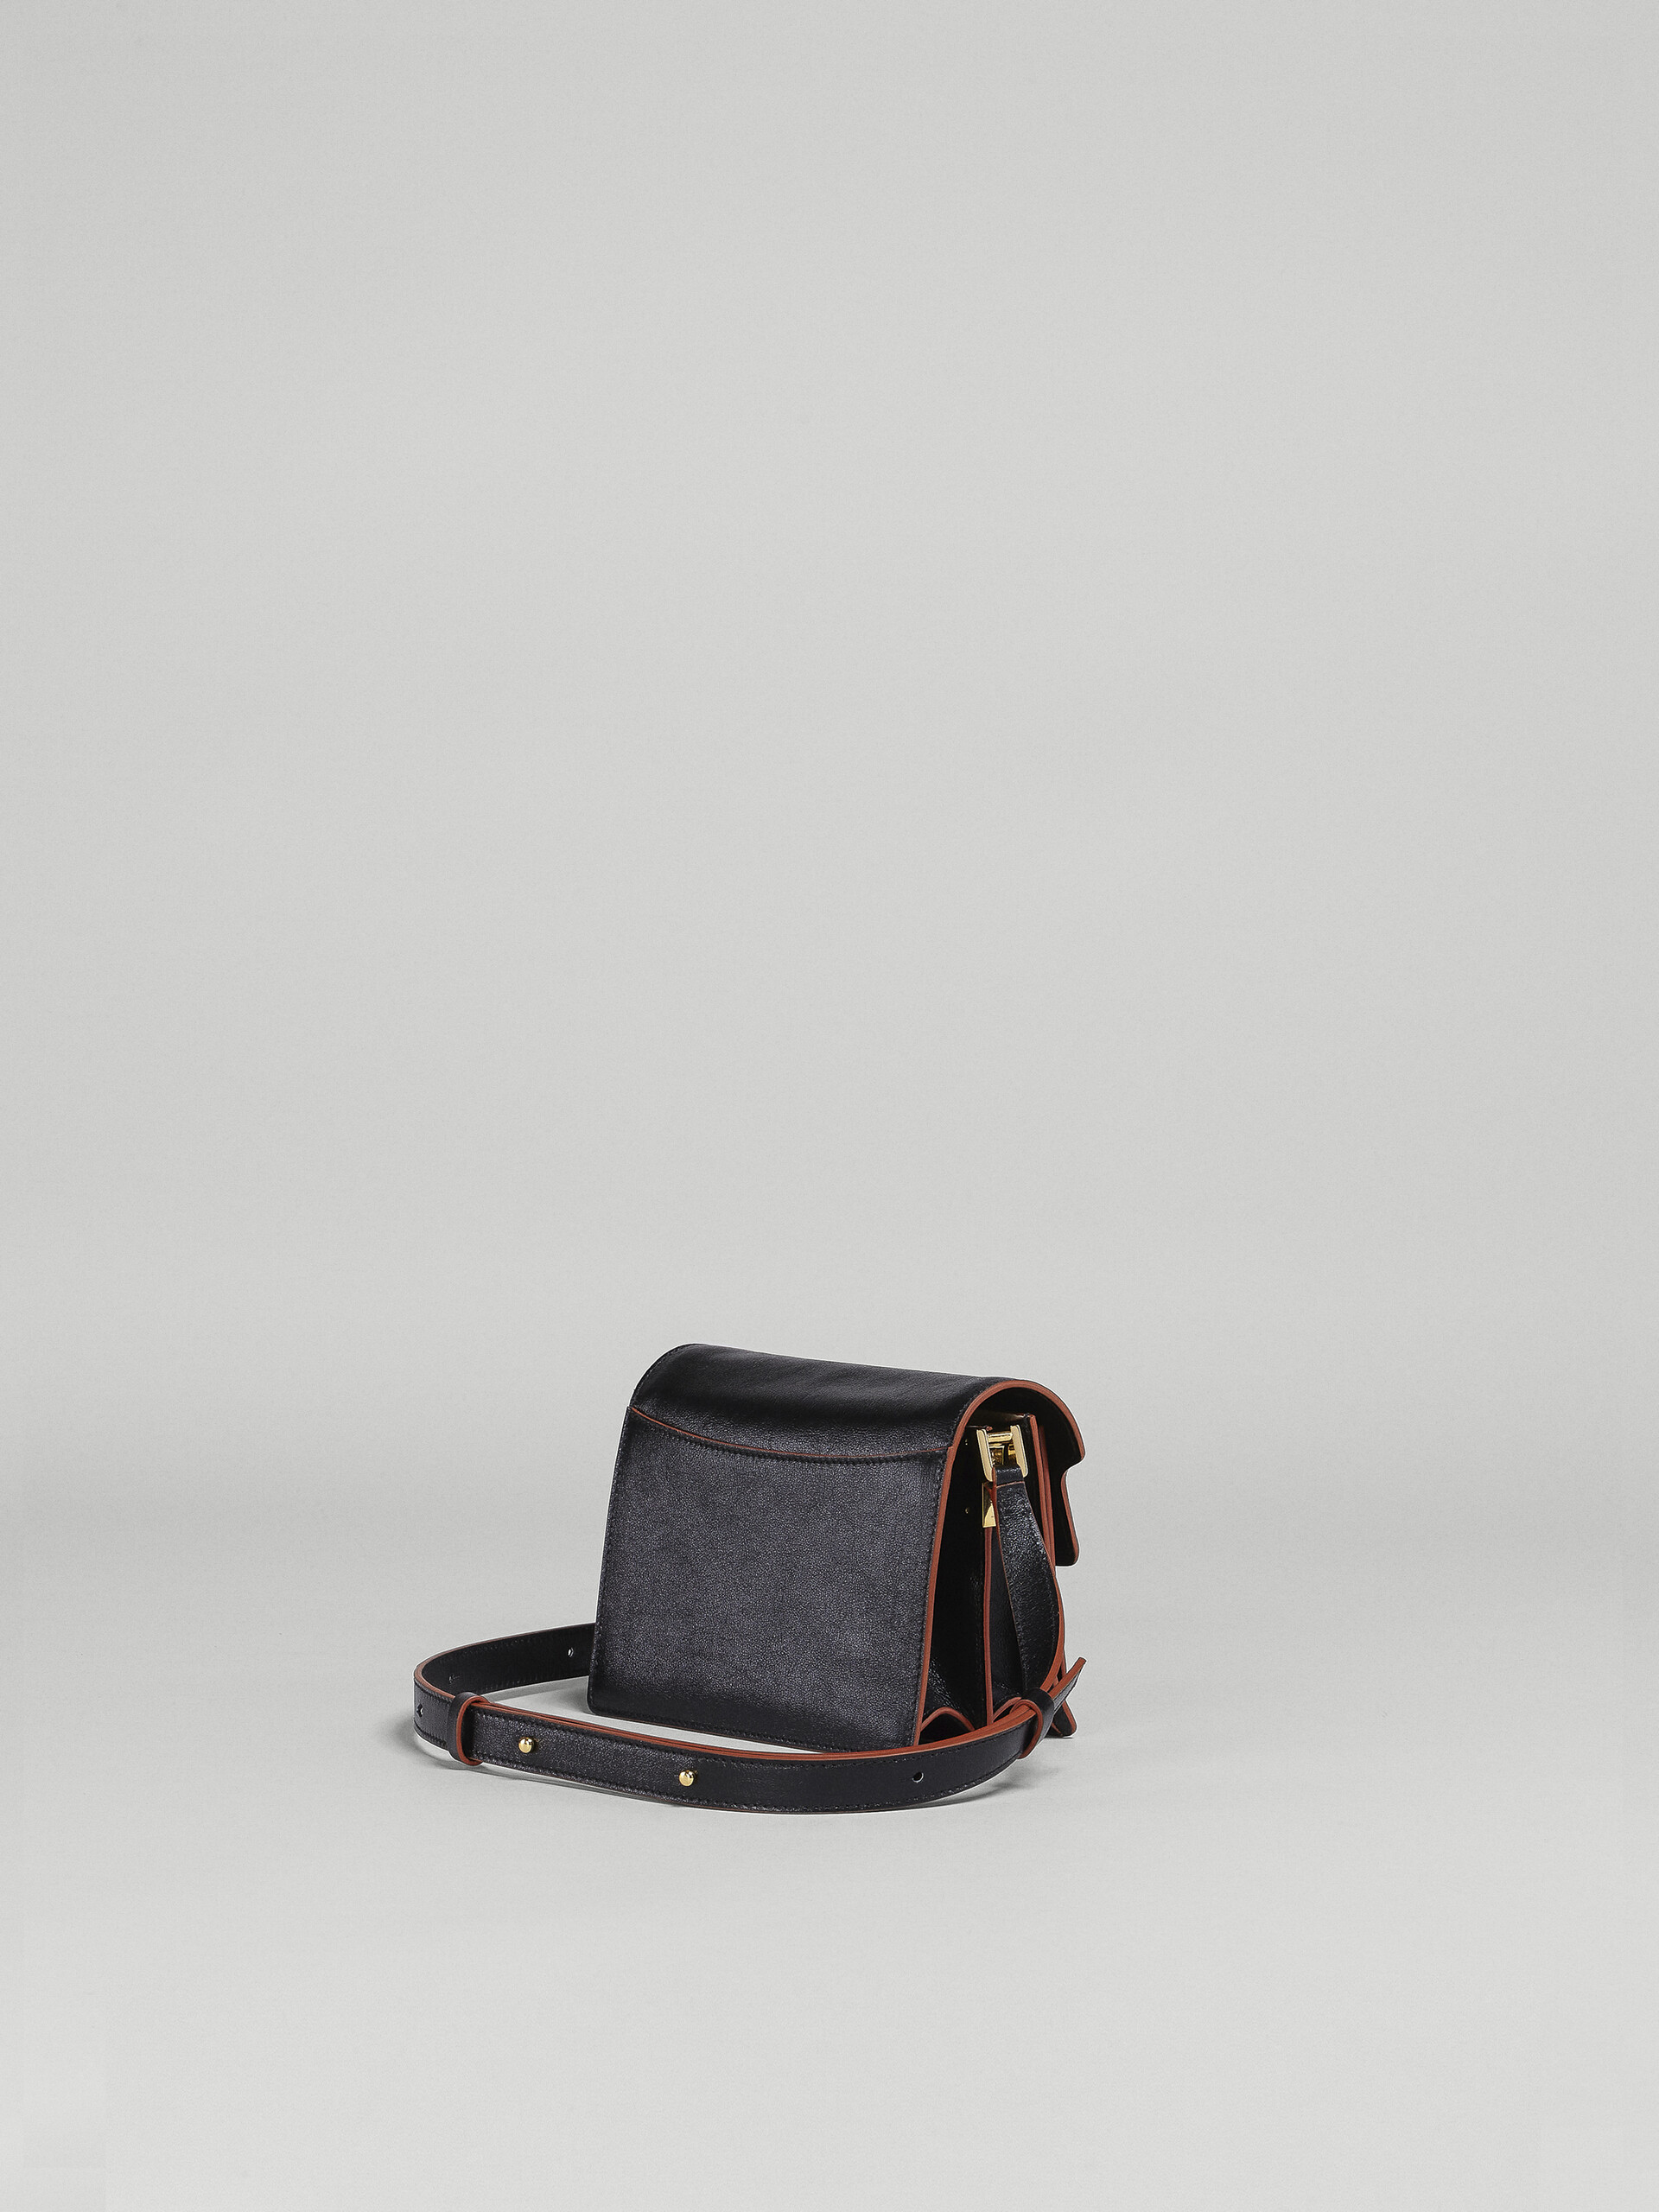 Mini sac TRUNK SOFT en veau foulonné noir - Sacs portés épaule - Image 3